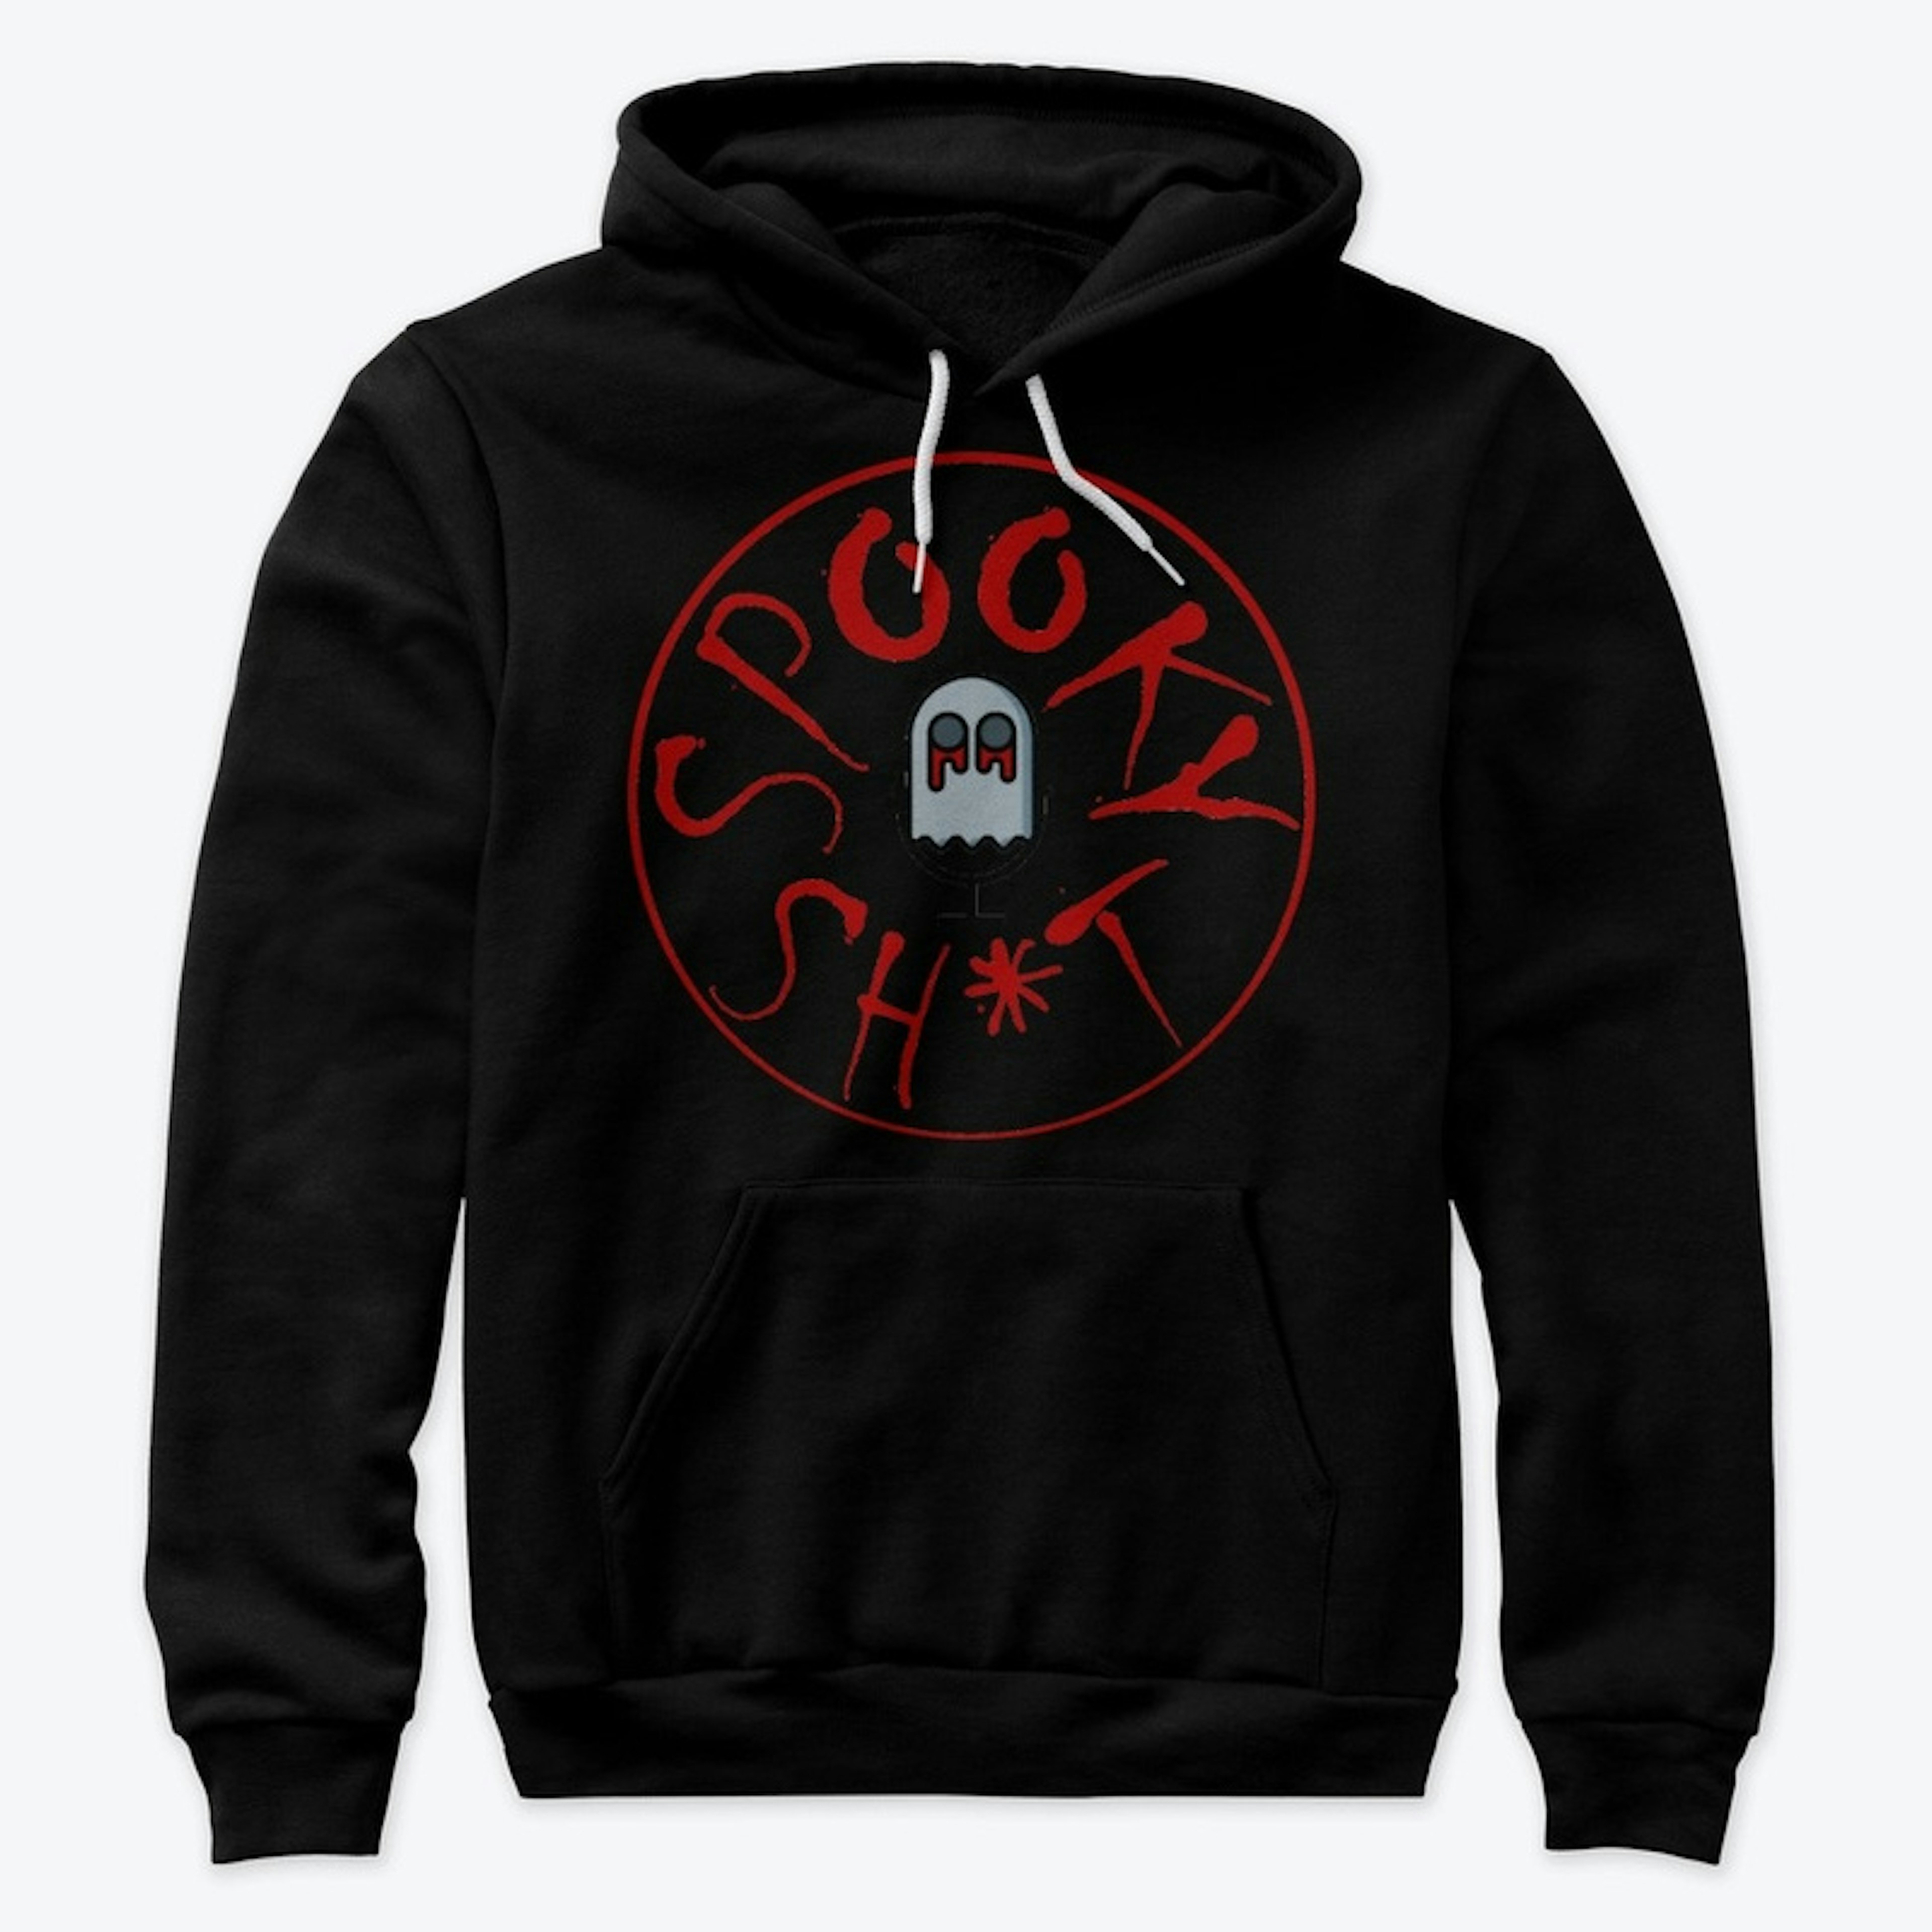 'Spooky Sh*t' Logo Sweater